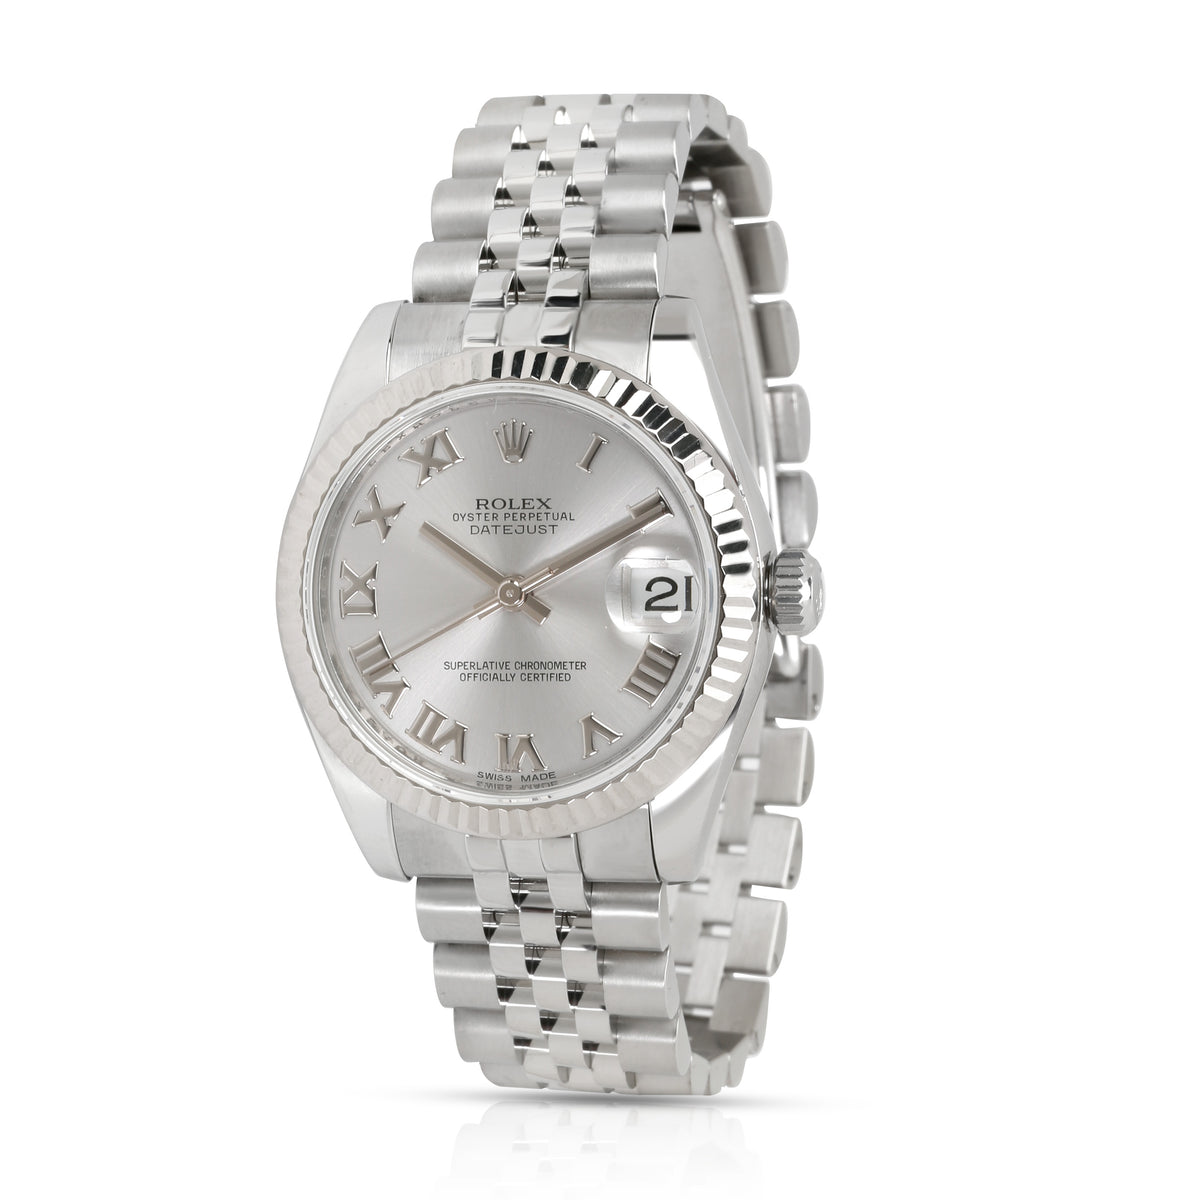 Rolex Datejust 178274 Unisex Watch in 18kt Stainless Steel/White Gold